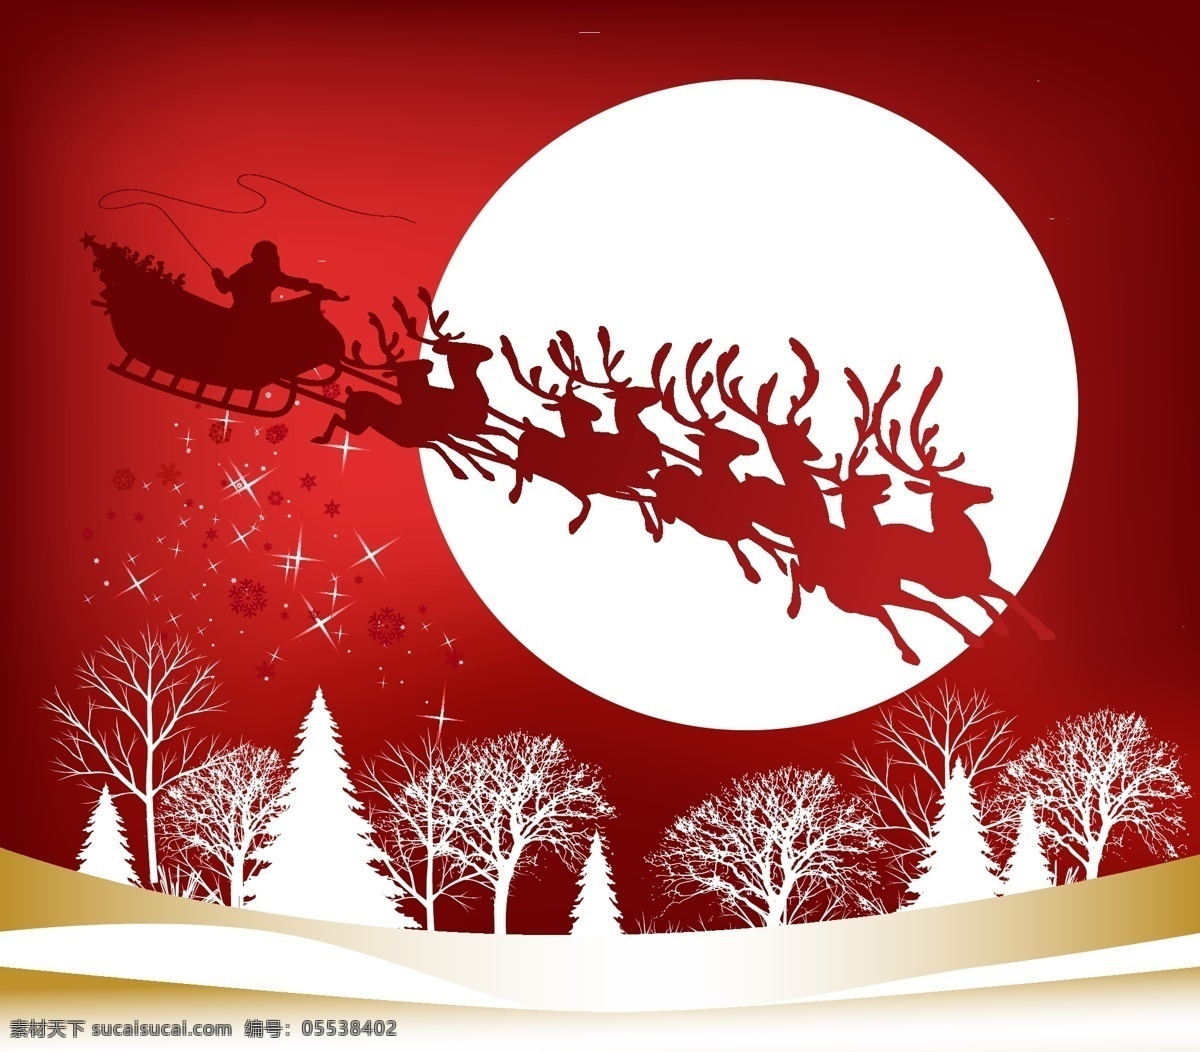 圣诞老人 驯鹿 雪橇 剪影 矢量 矢量素材 矢量图 圣诞节素材 喜庆节日 驯鹿麋鹿 雪花雪景 冬天背景 圣诞节剪影 蓝色背景 红色